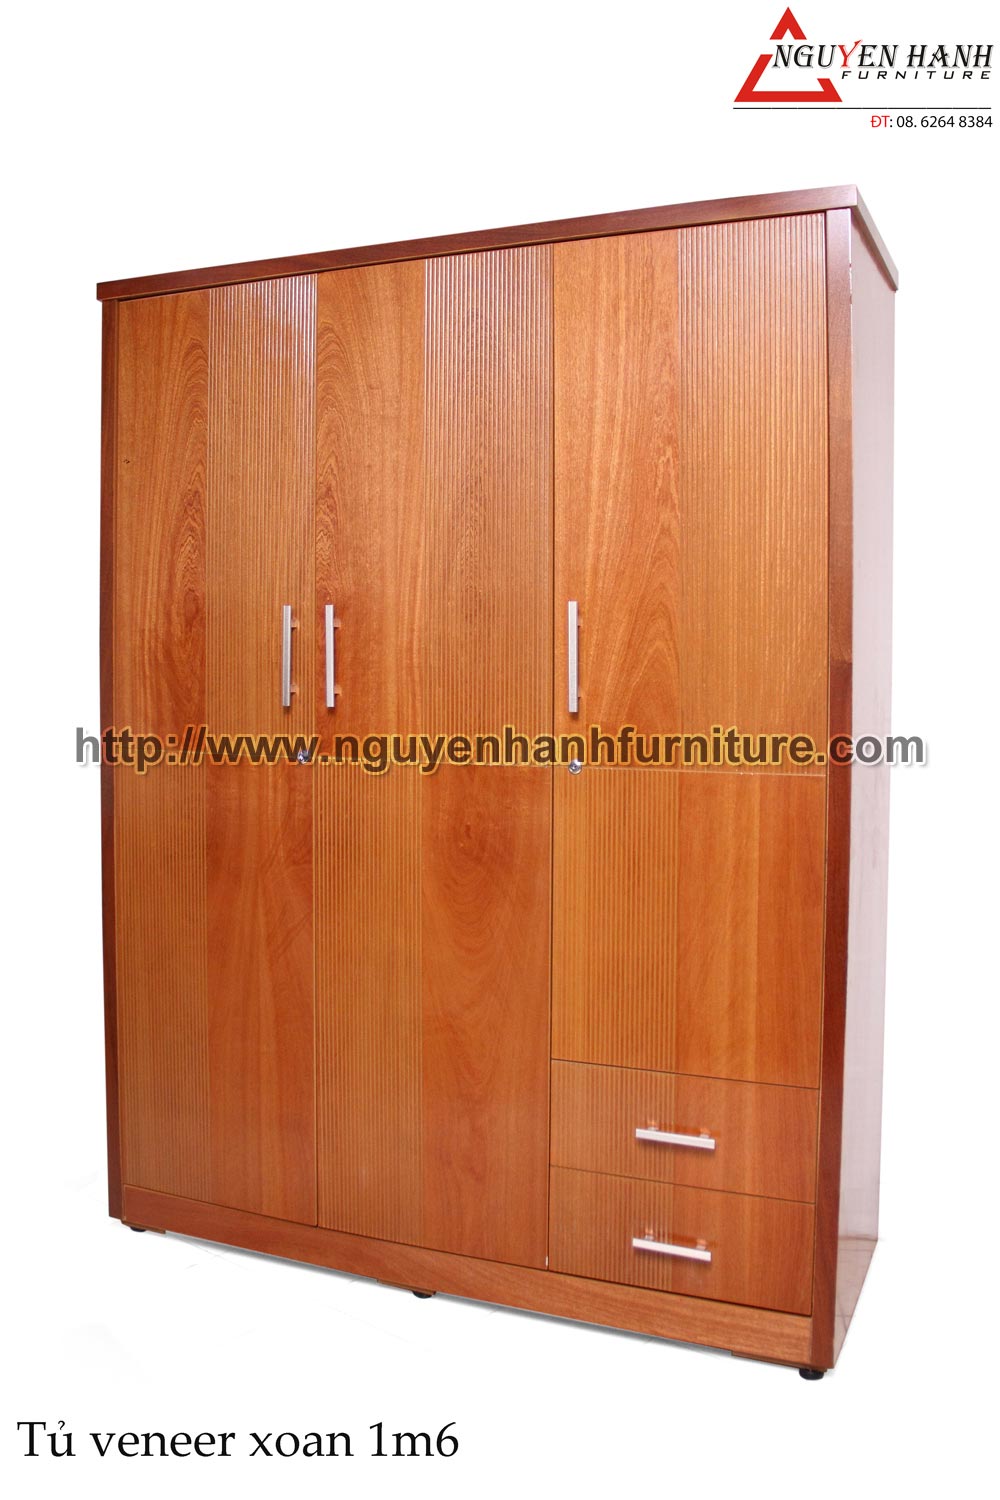 Name product: 1m6 Wardrobe of veneer Bead-tree wood - Dimensions: 58 x 160 x 210cm - Description: Veneer bead tree wood